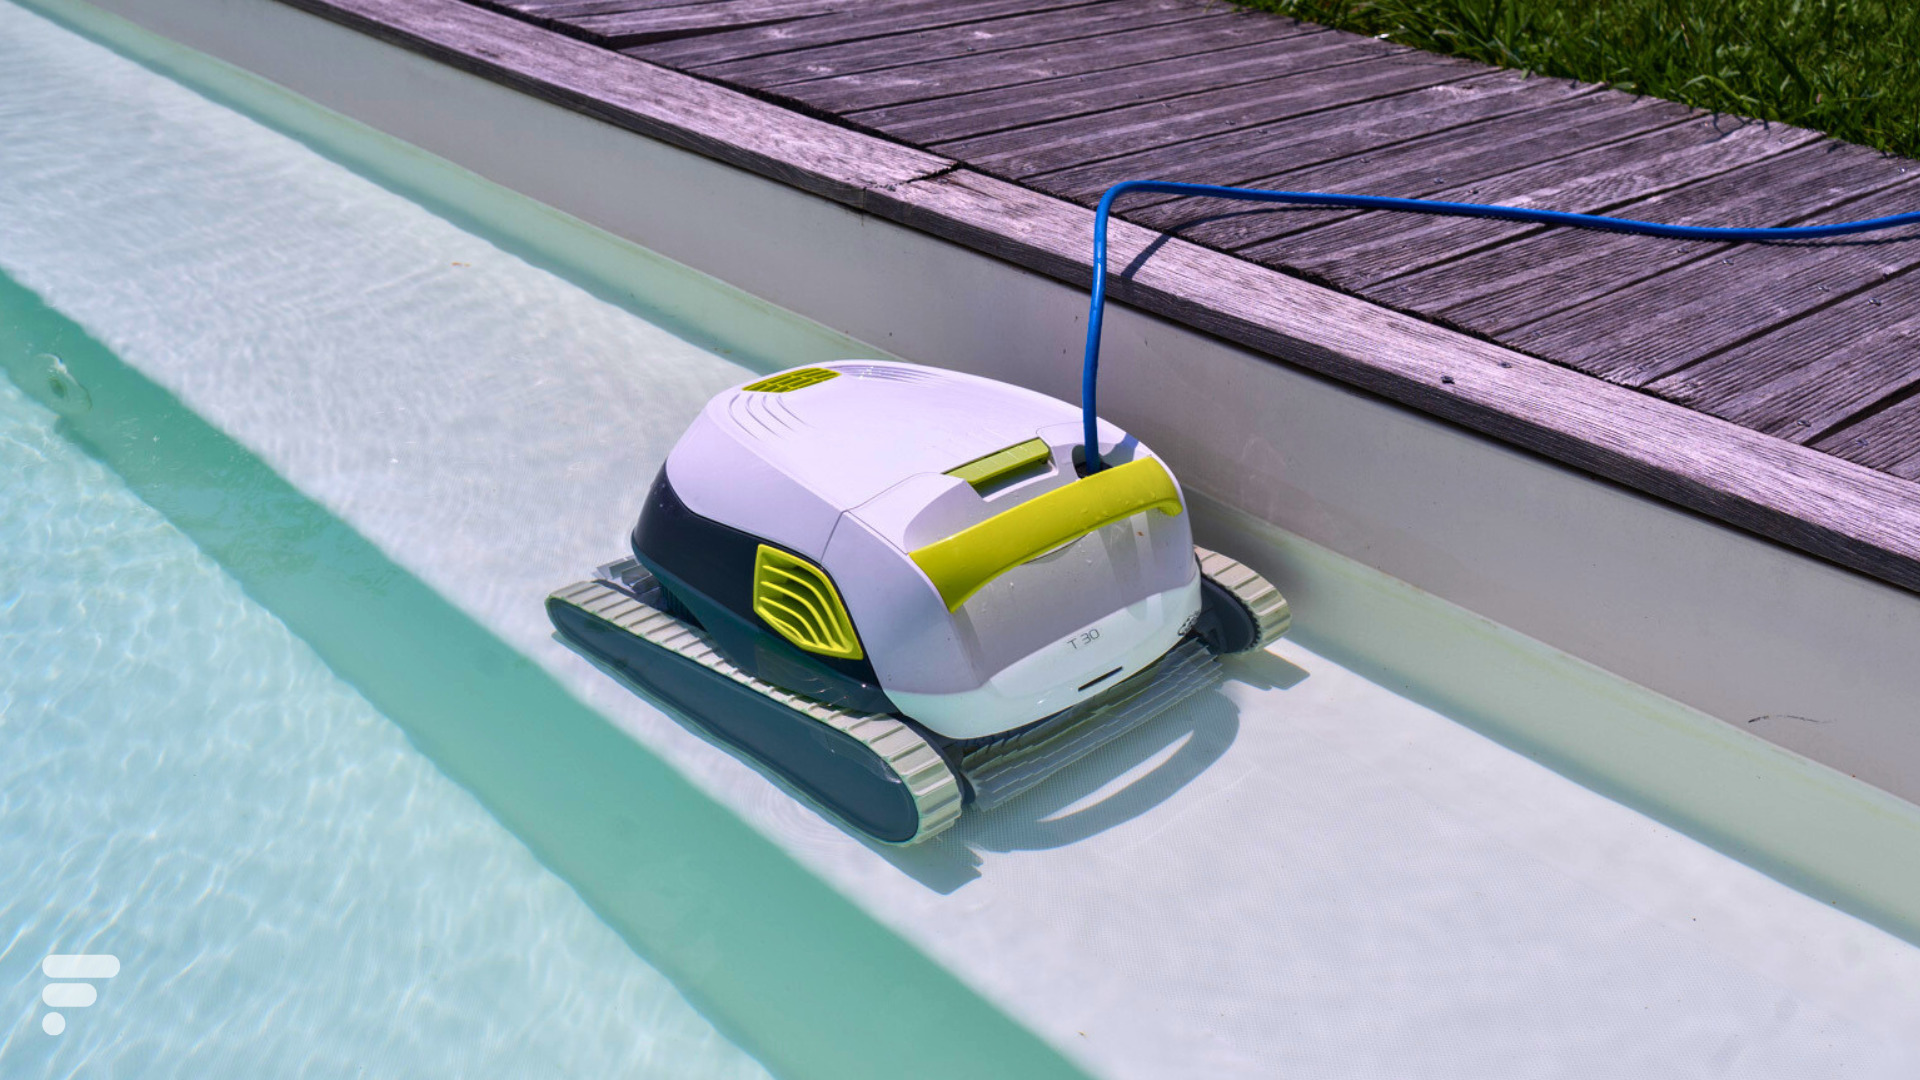 Accessoire pour piscine : cet aspirateur robot nettoie l'eau  automatiquement pour moins de 200 euros